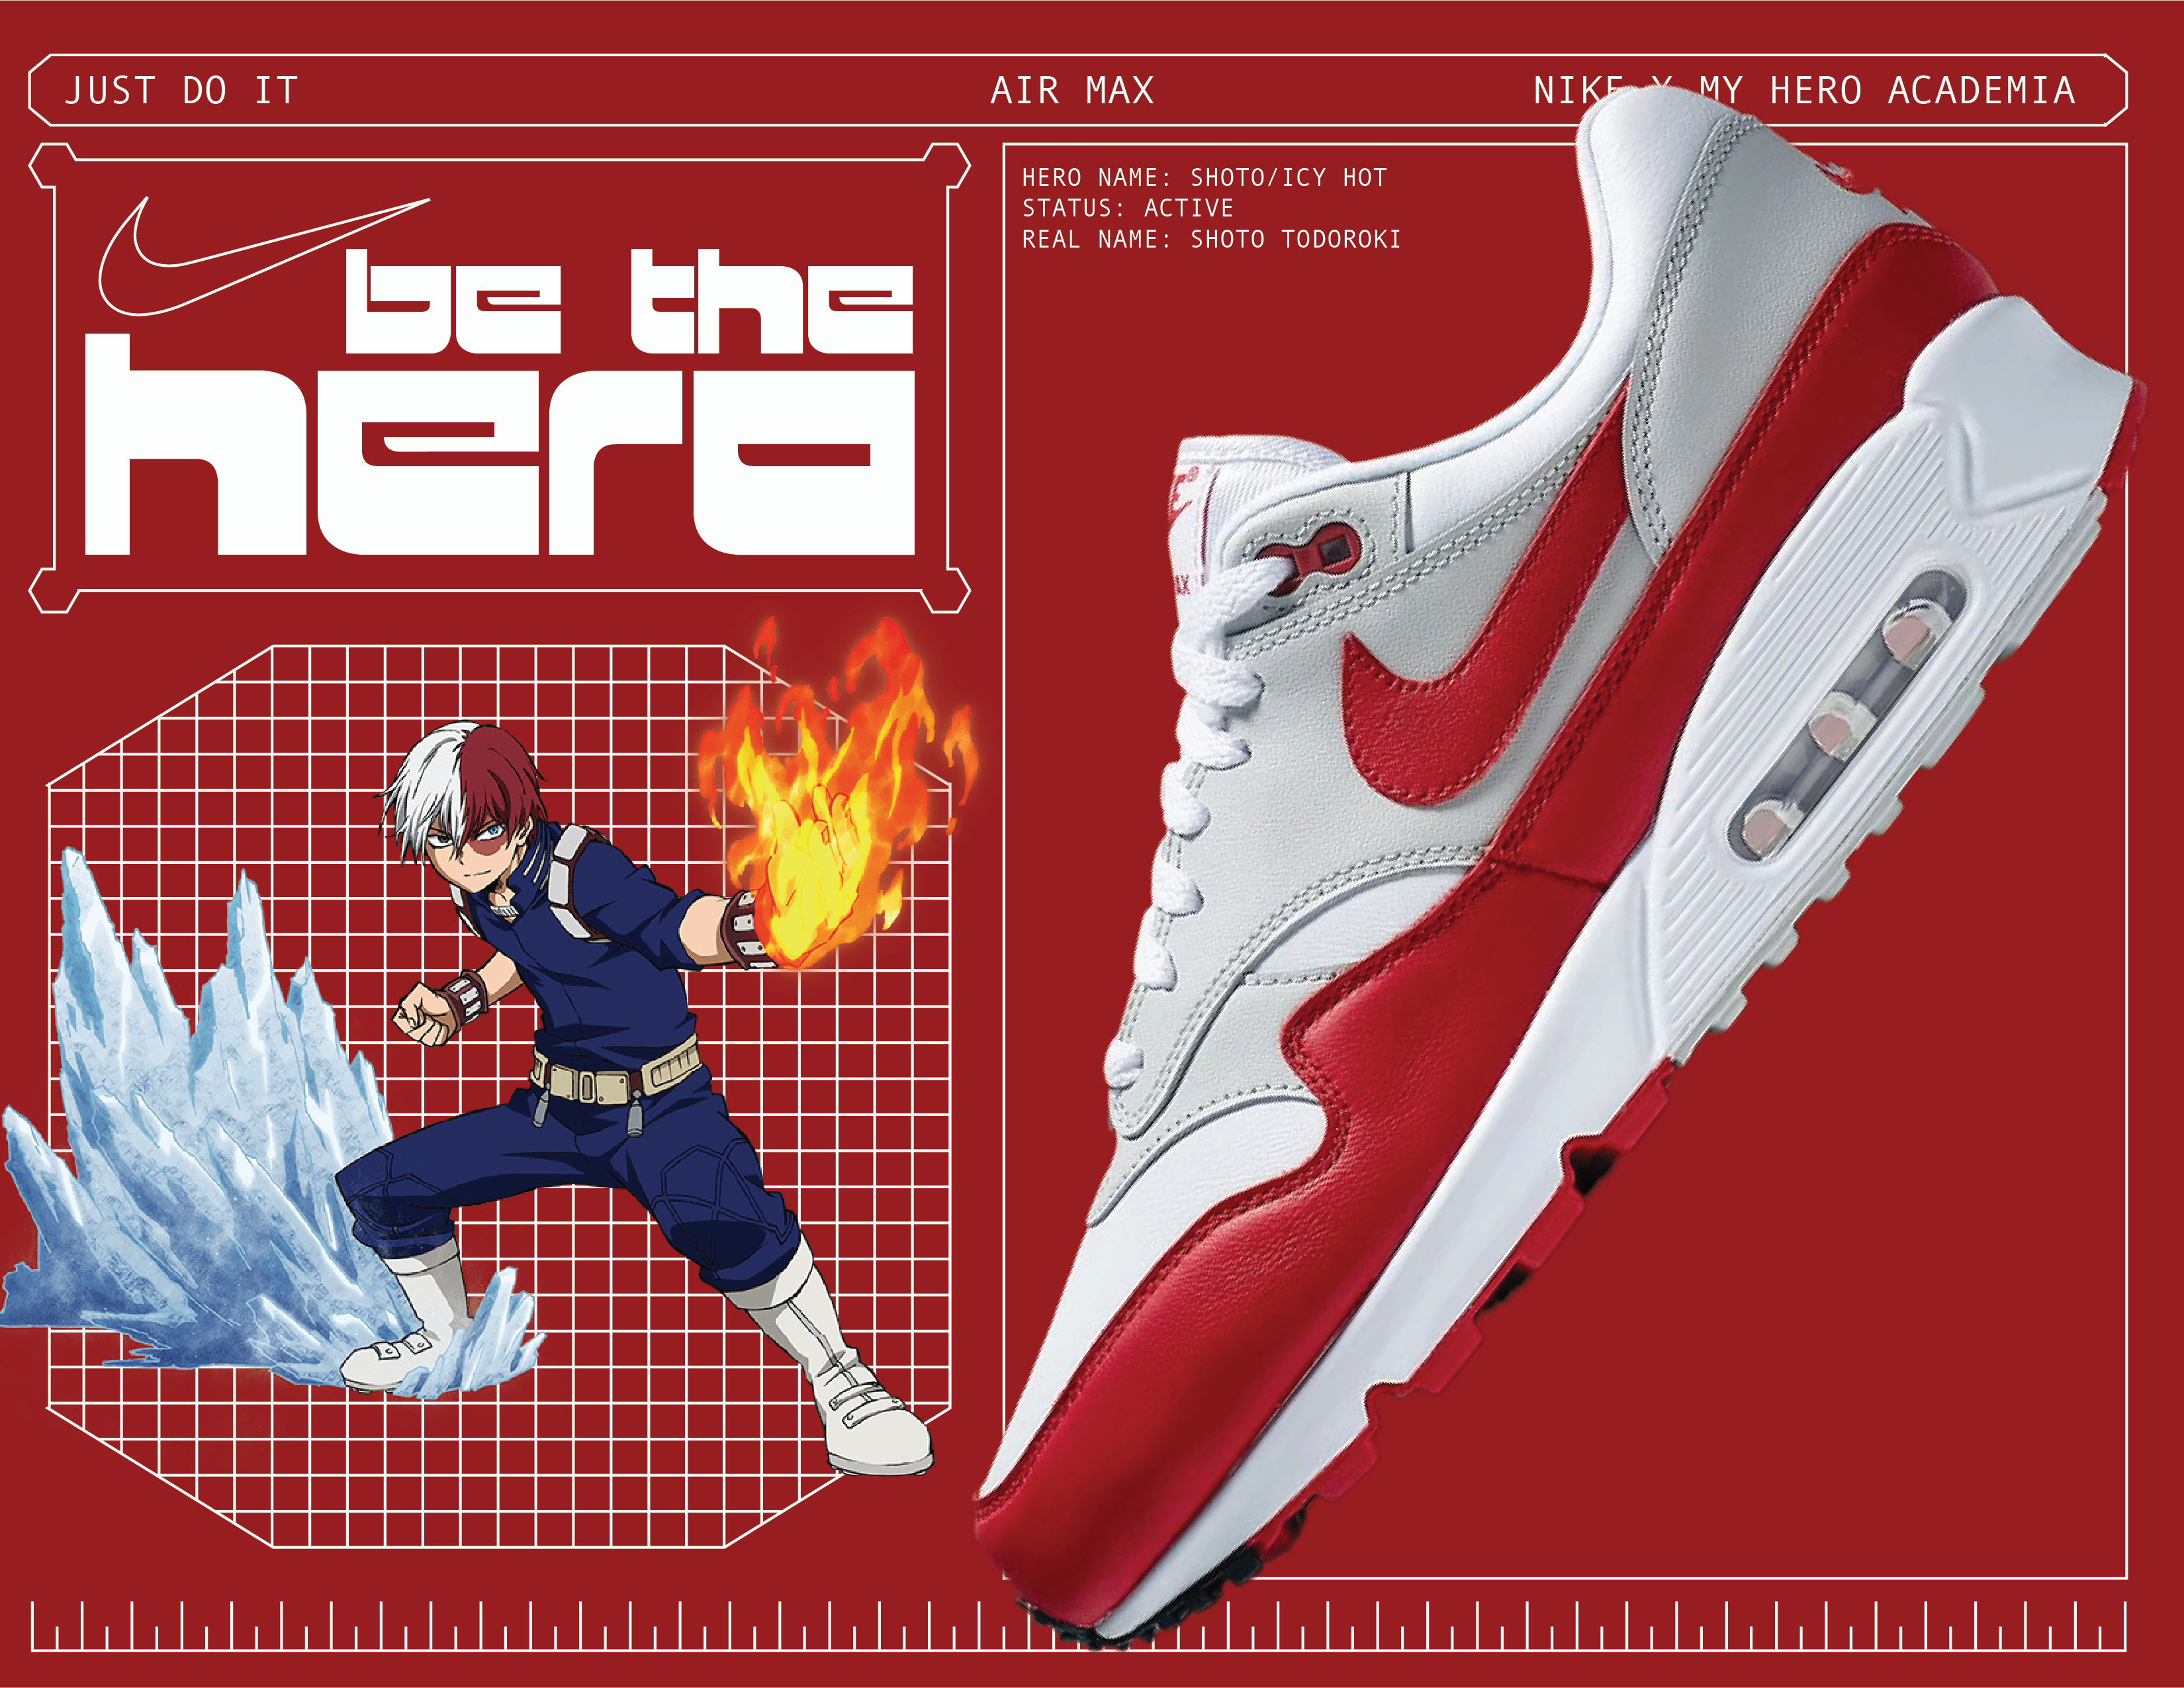 Nike X My Hero Academia - Ezra Lee